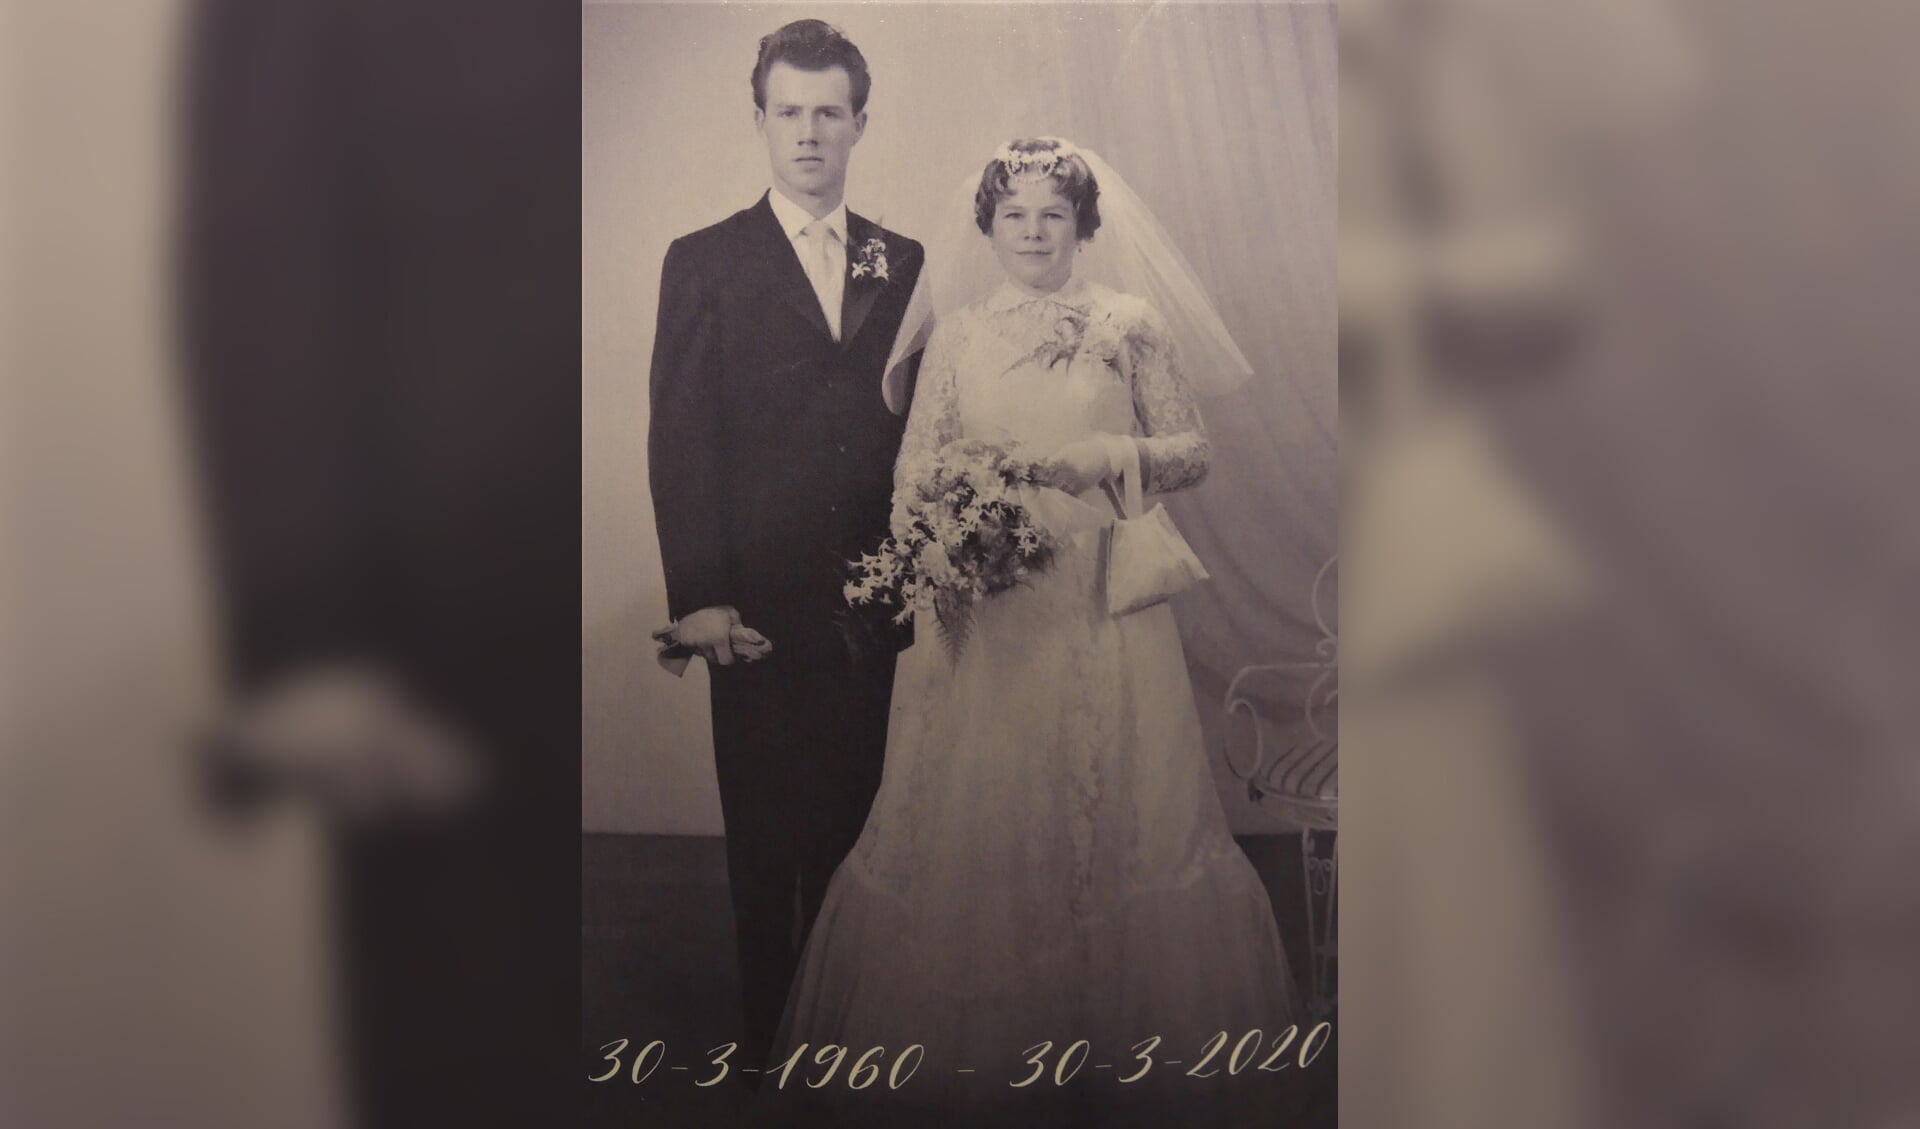 Bertus en Corrie, die elkaar al kennen sinds de basisschool, op hun trouwdag in 1960.